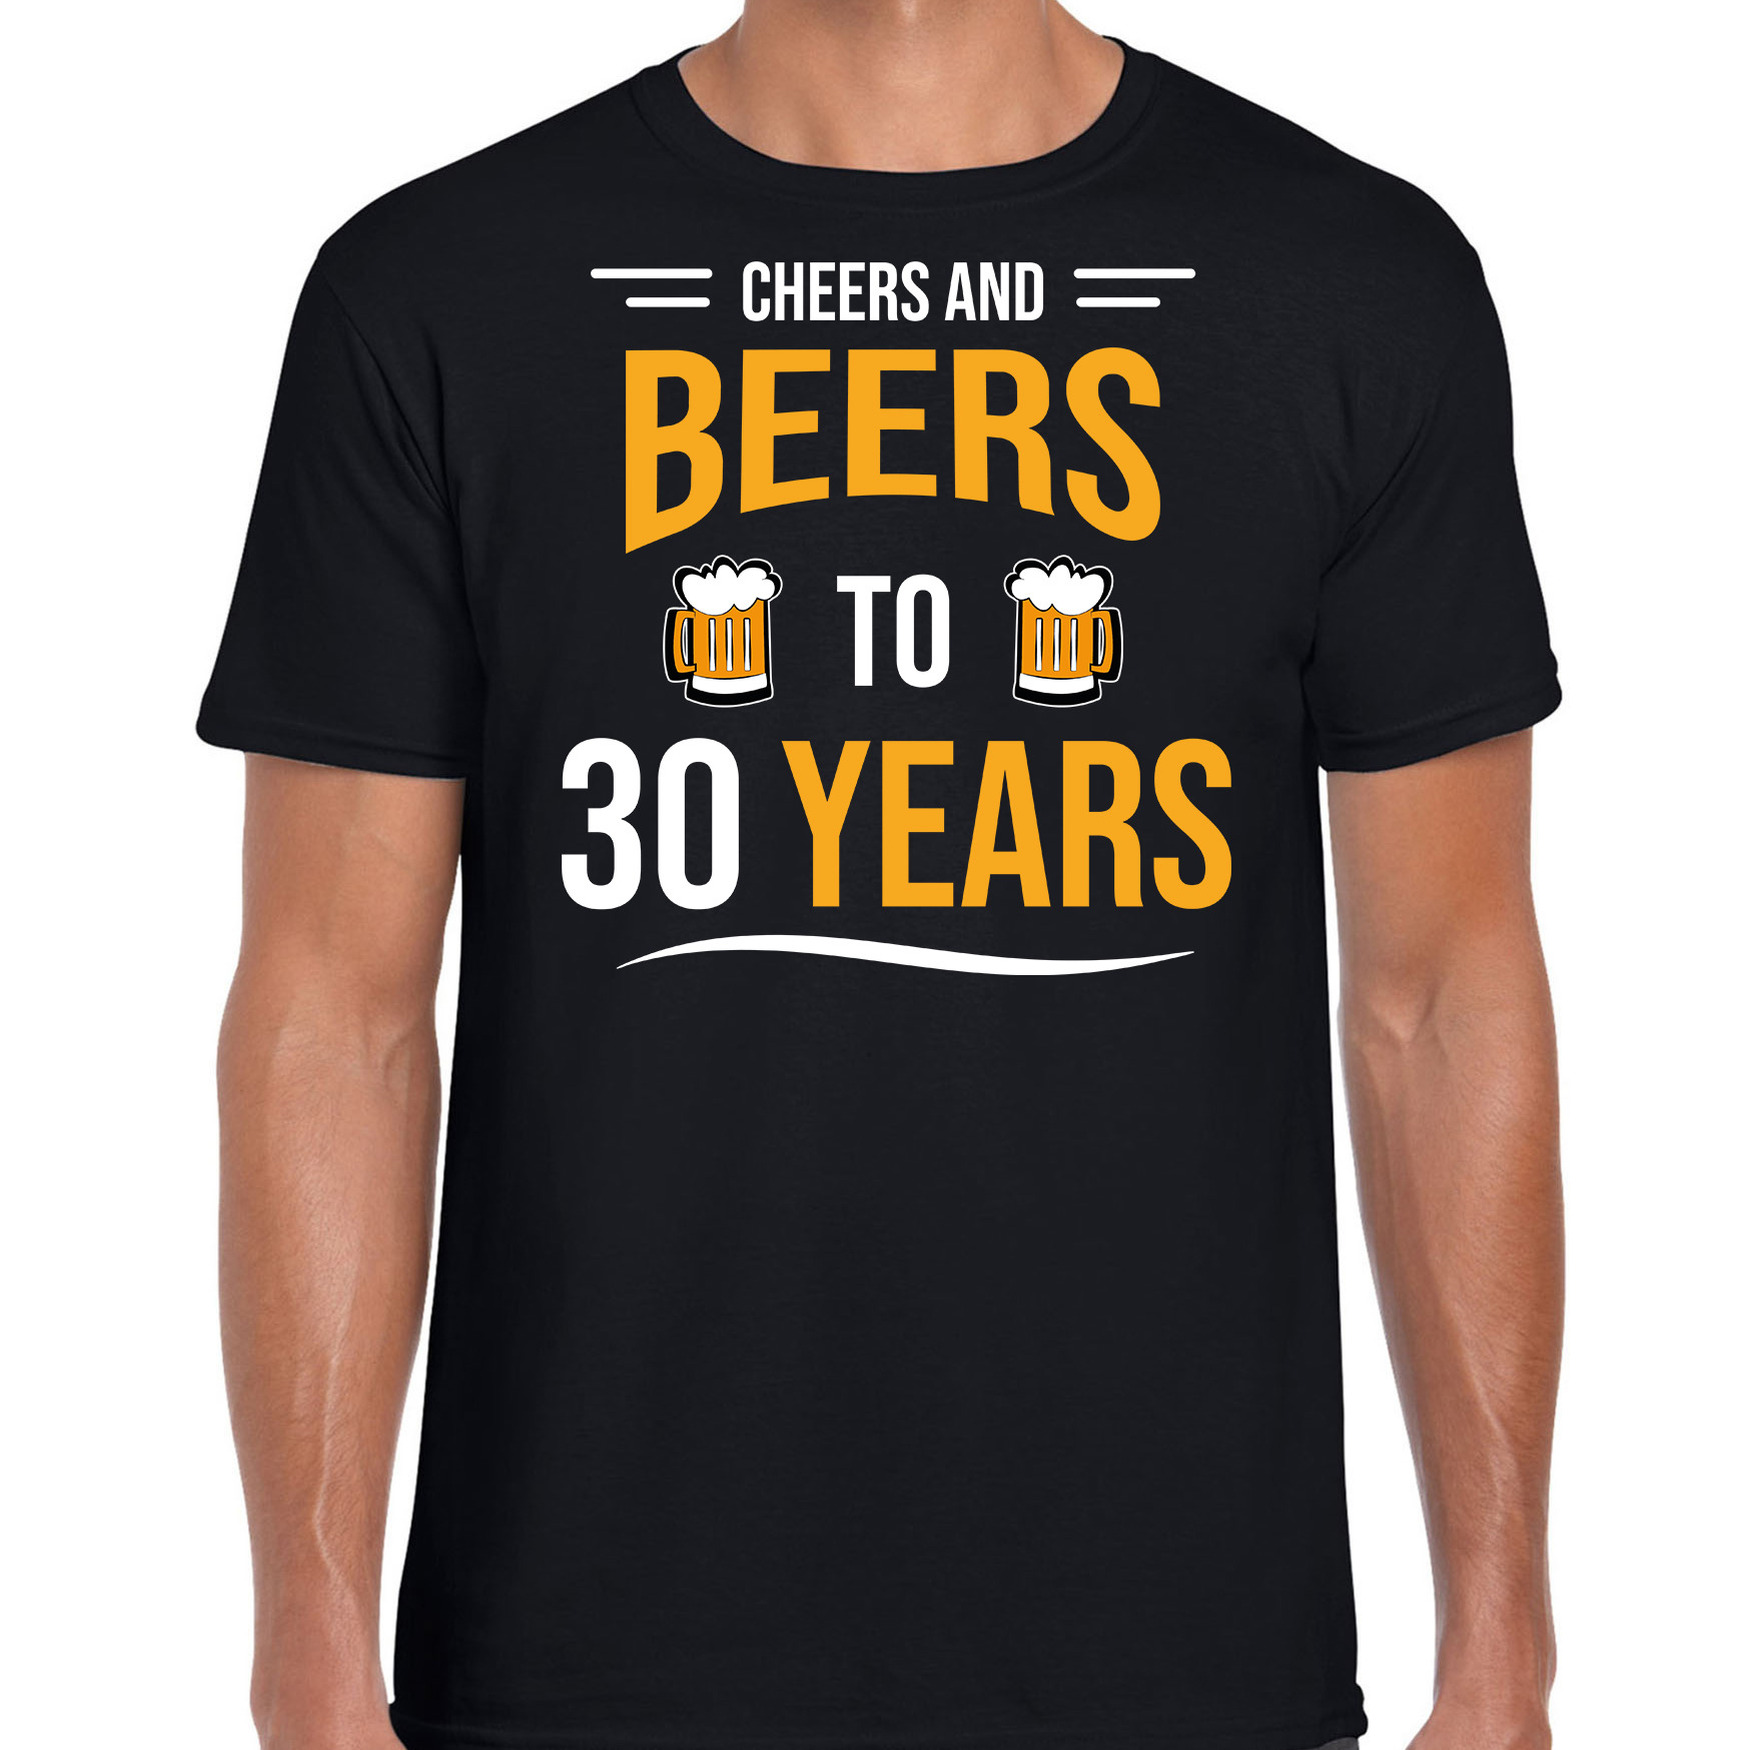 Cheers and beers 30 jaar verjaardag cadeau t-shirt zwart voor heren